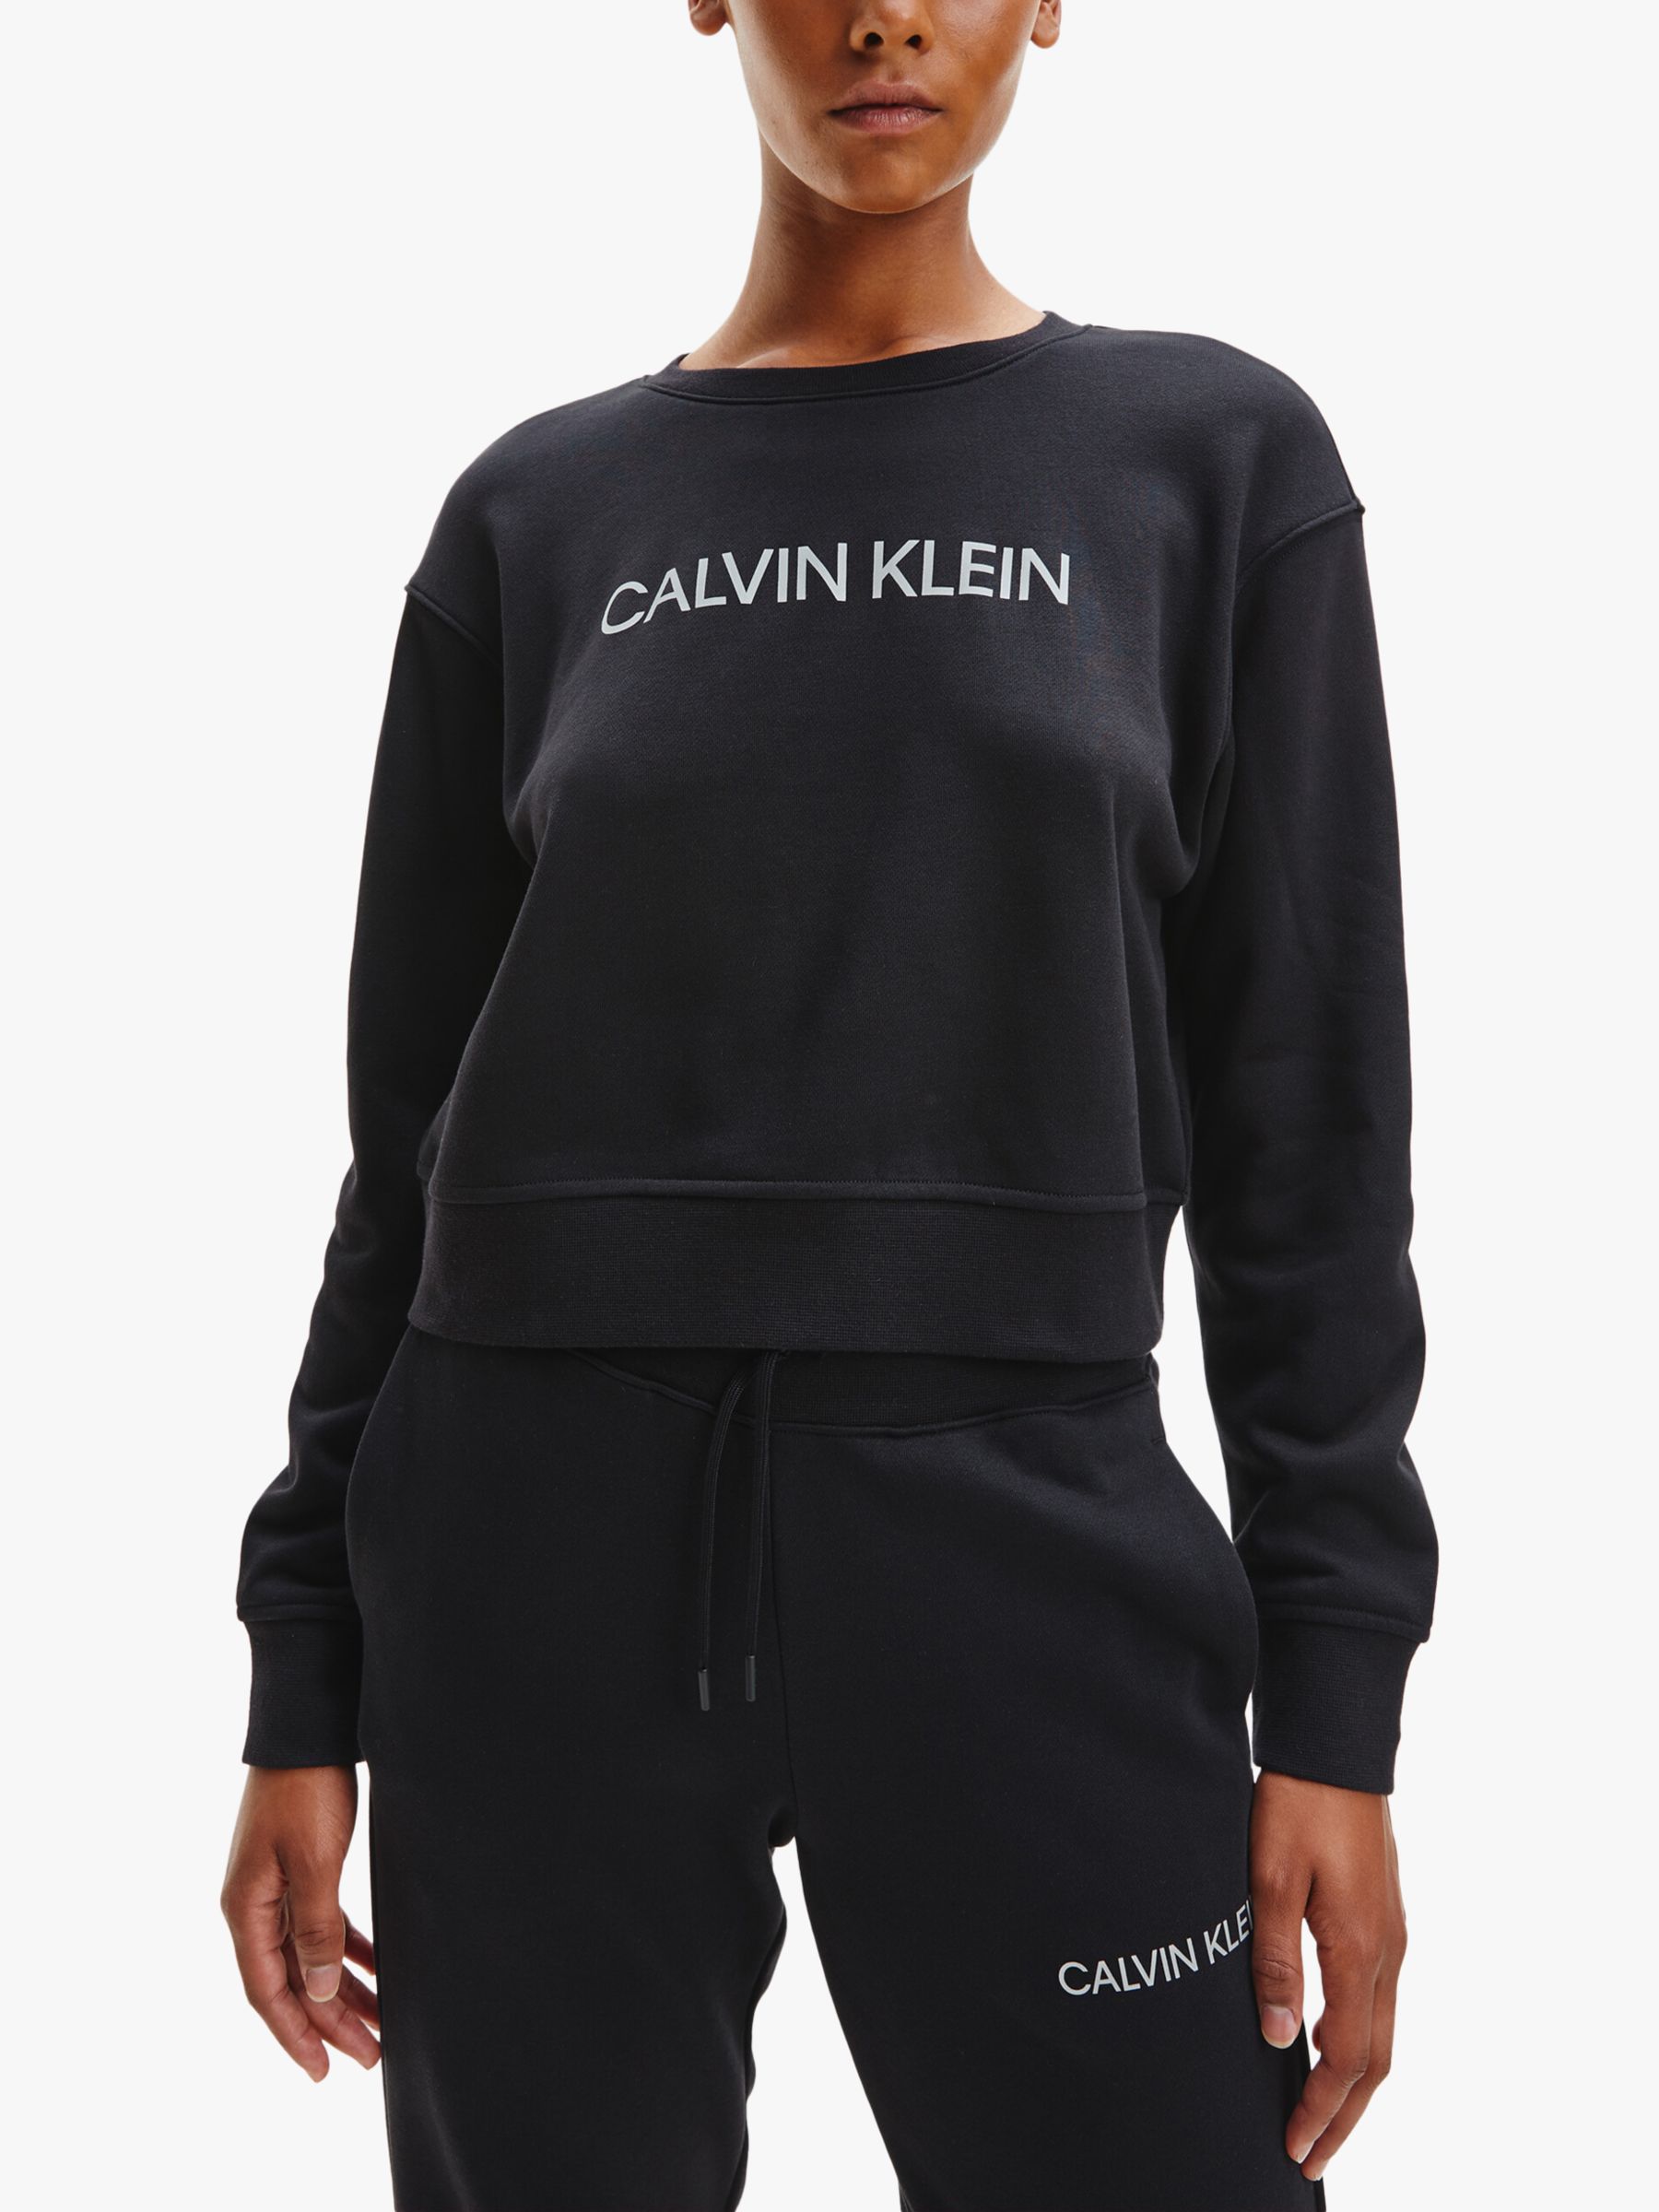 Calvin Klein Performance Sweatshirt, Black